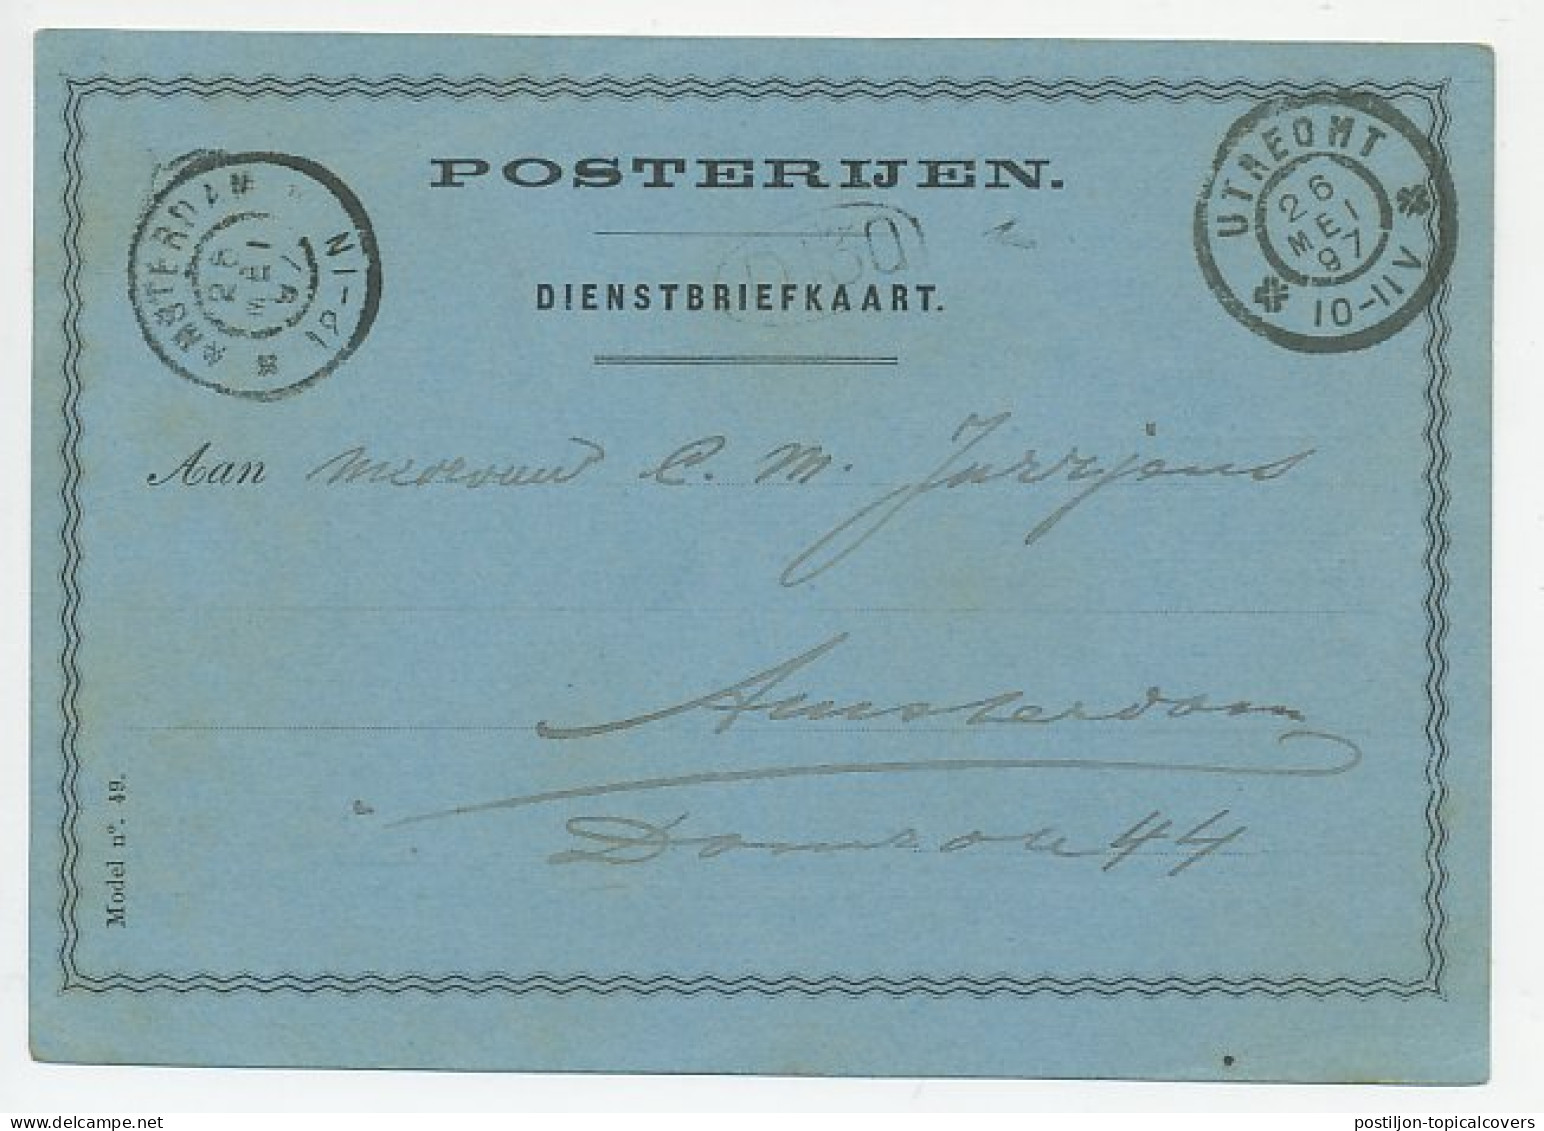 Dienst Posterijen Utrecht 1897 - Drukwerk Bevattende Schrift - Non Classificati